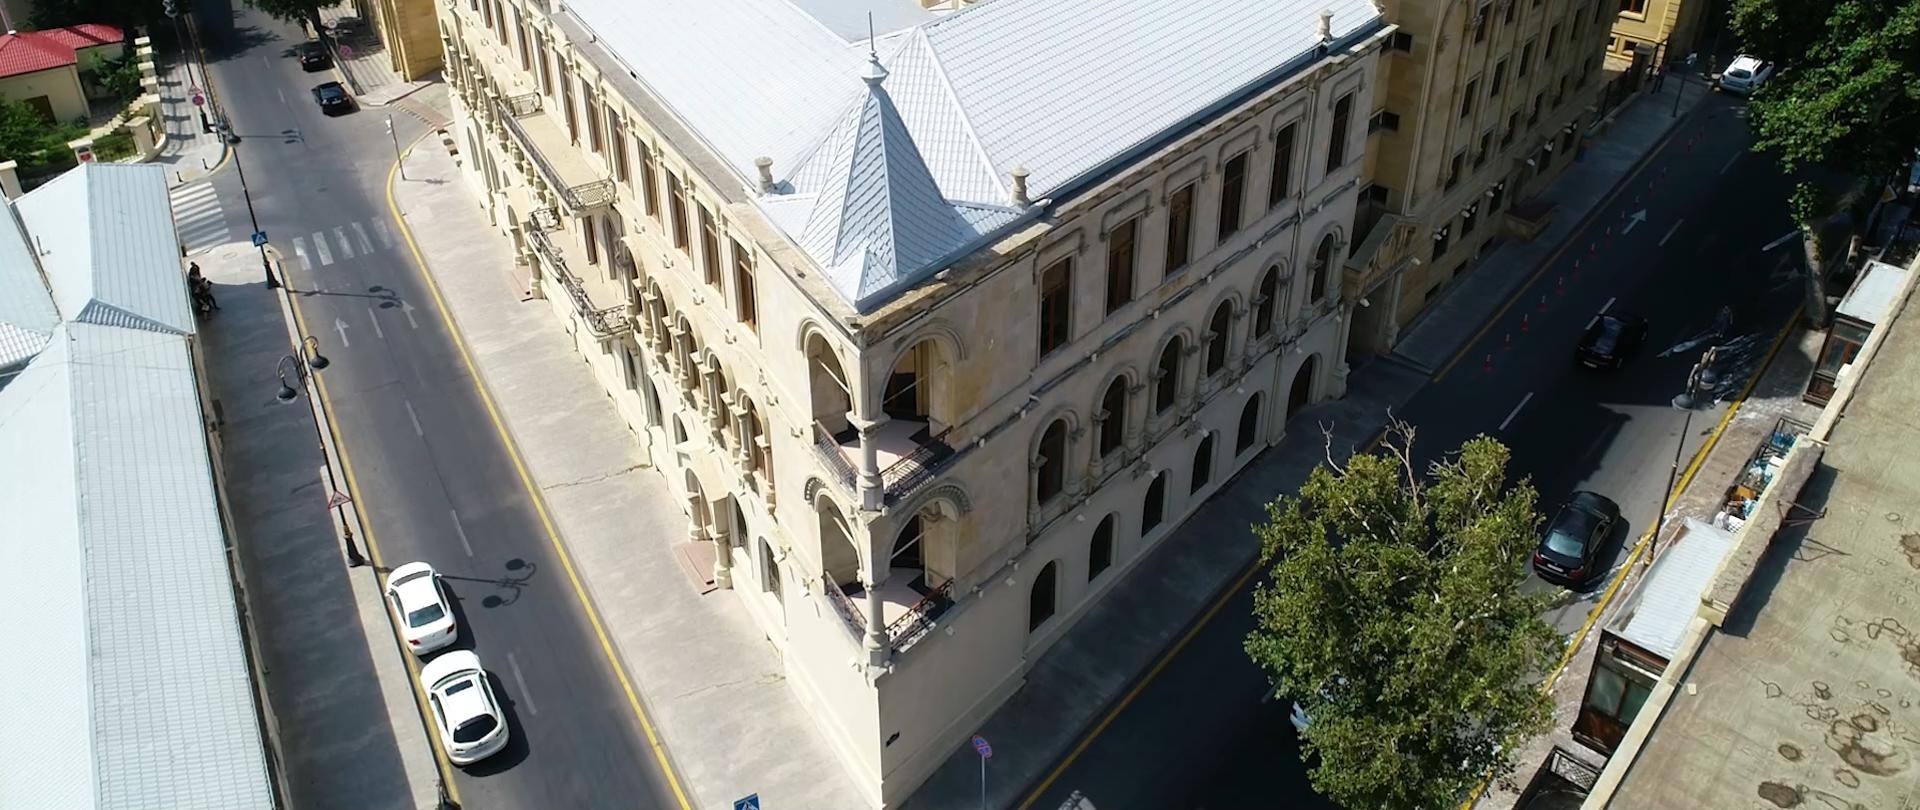 Dawny biurowiec Rotszyldów w Baku - polskie dziedzictwo w Azerbejdżanie